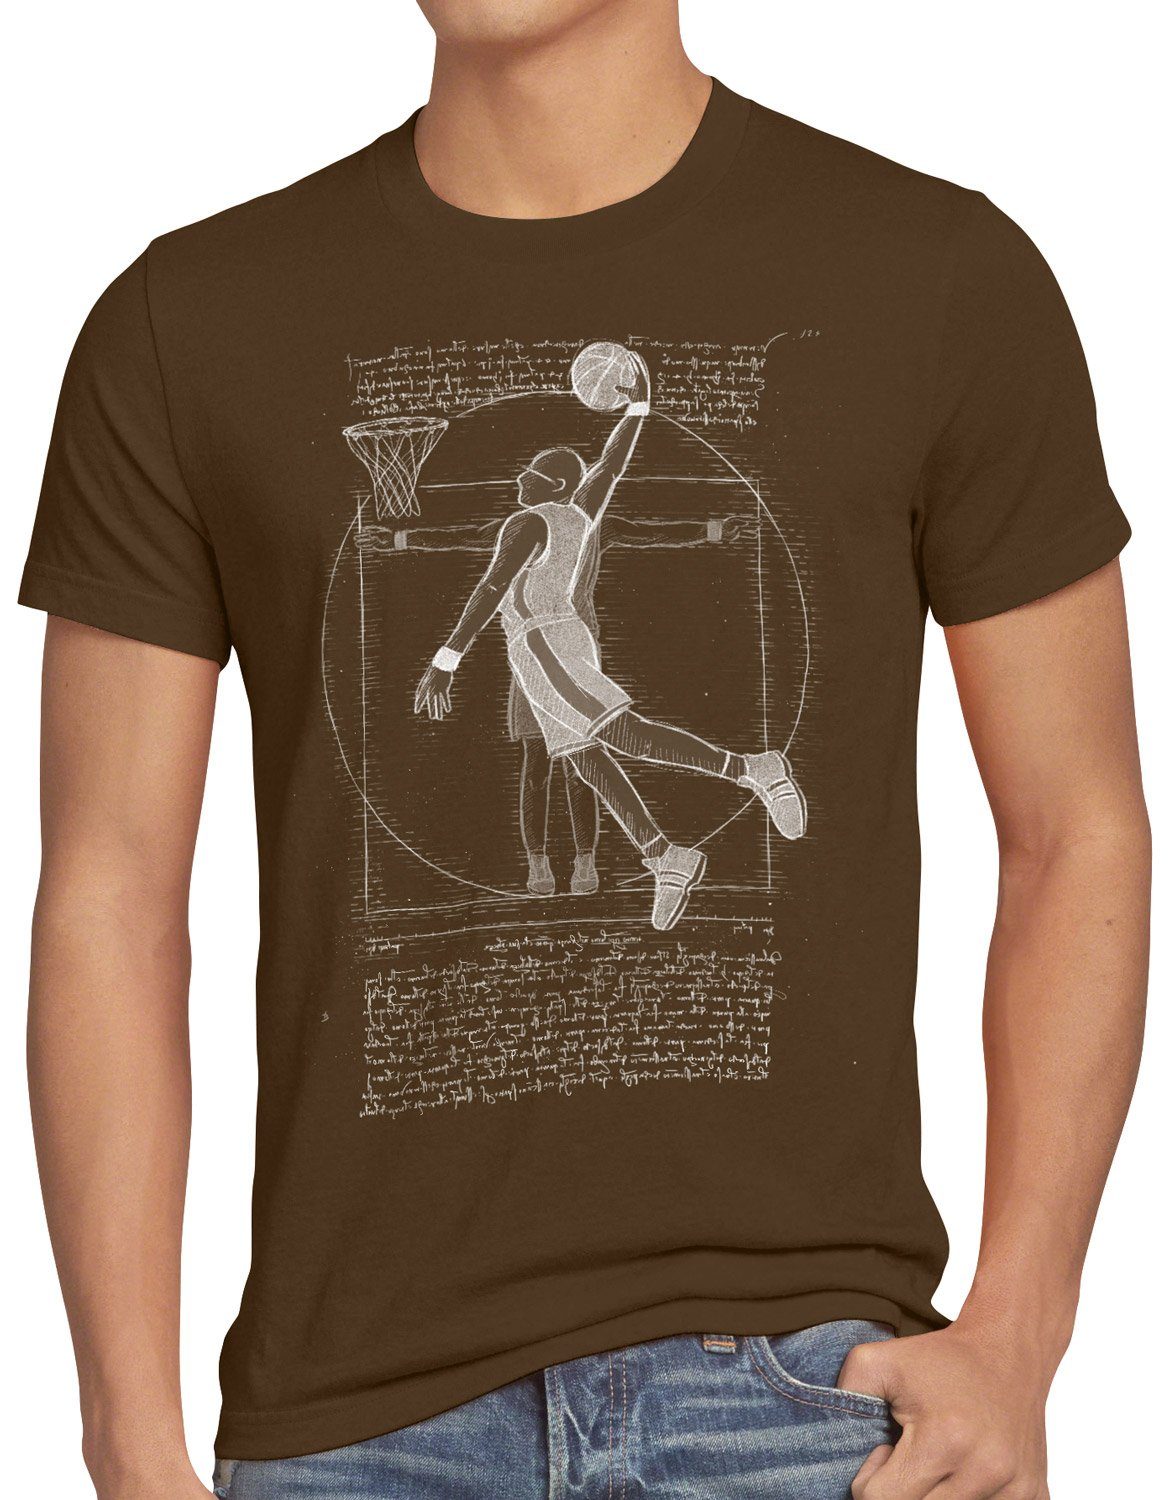 style3 Print-Shirt da Vitruvianischer mensch ballsport Basketballspieler Herren vinci T-Shirt braun